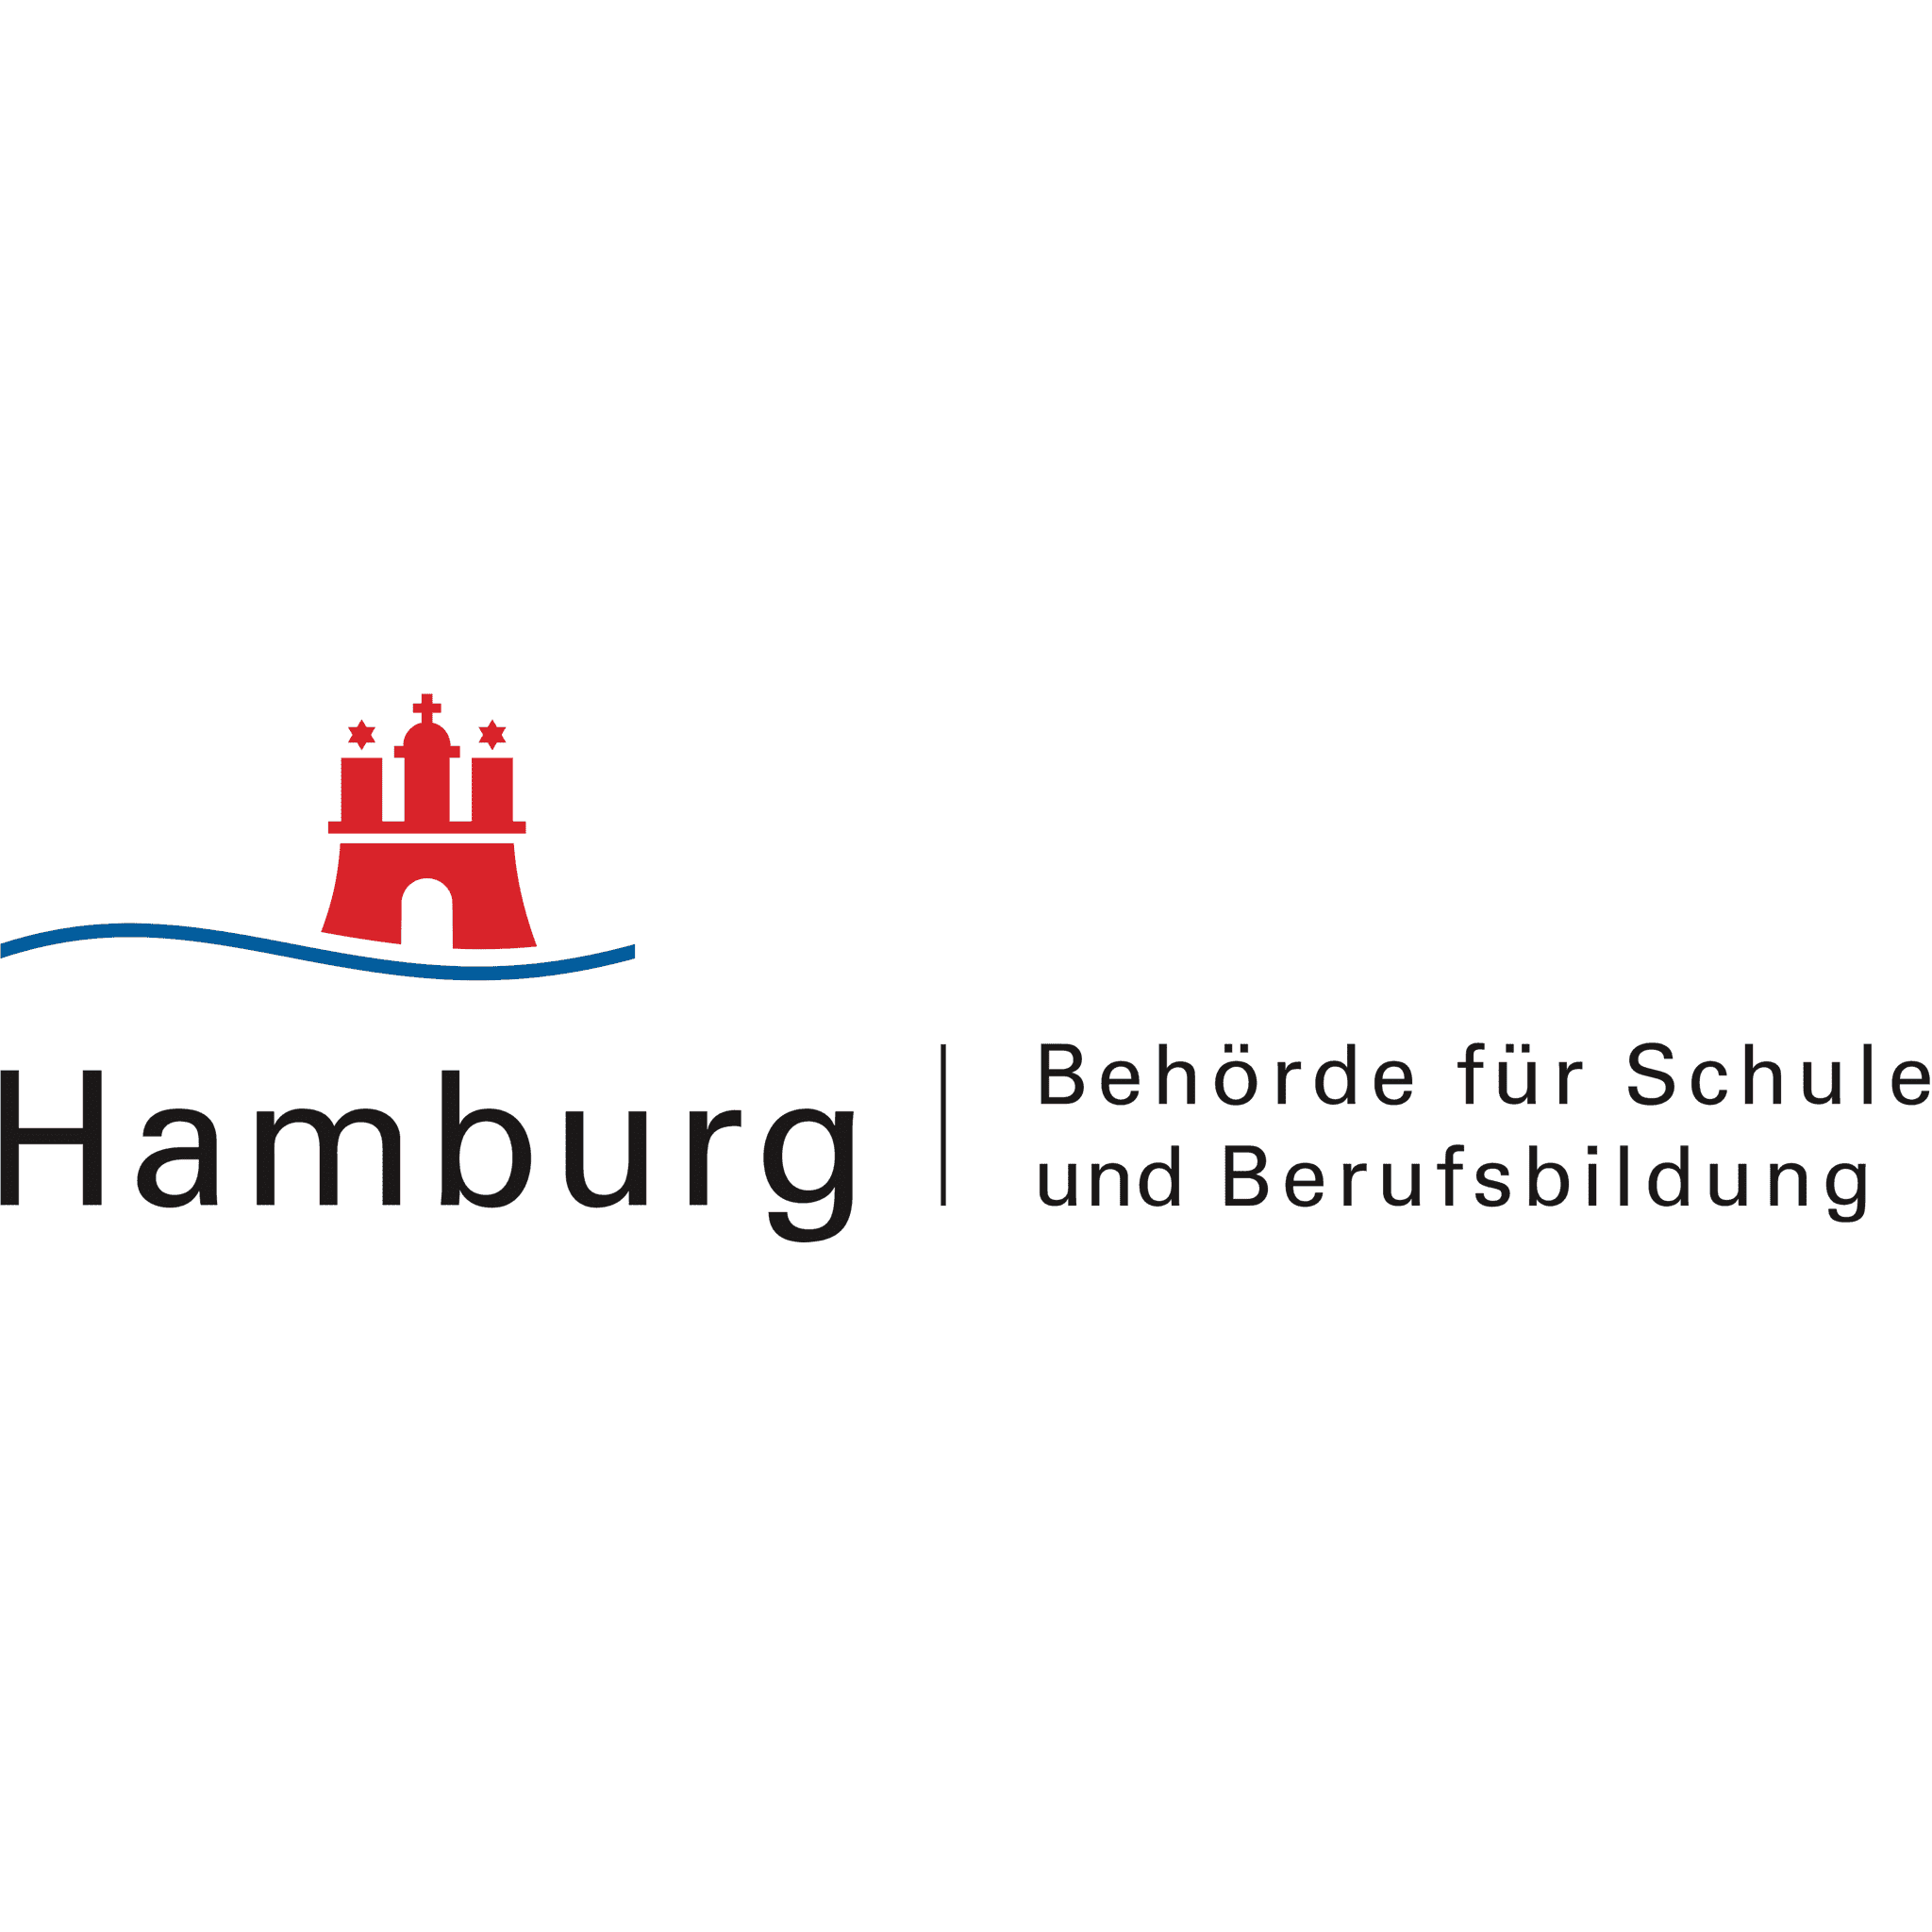 Behörde für Schule und Berufsbildung Hamburg